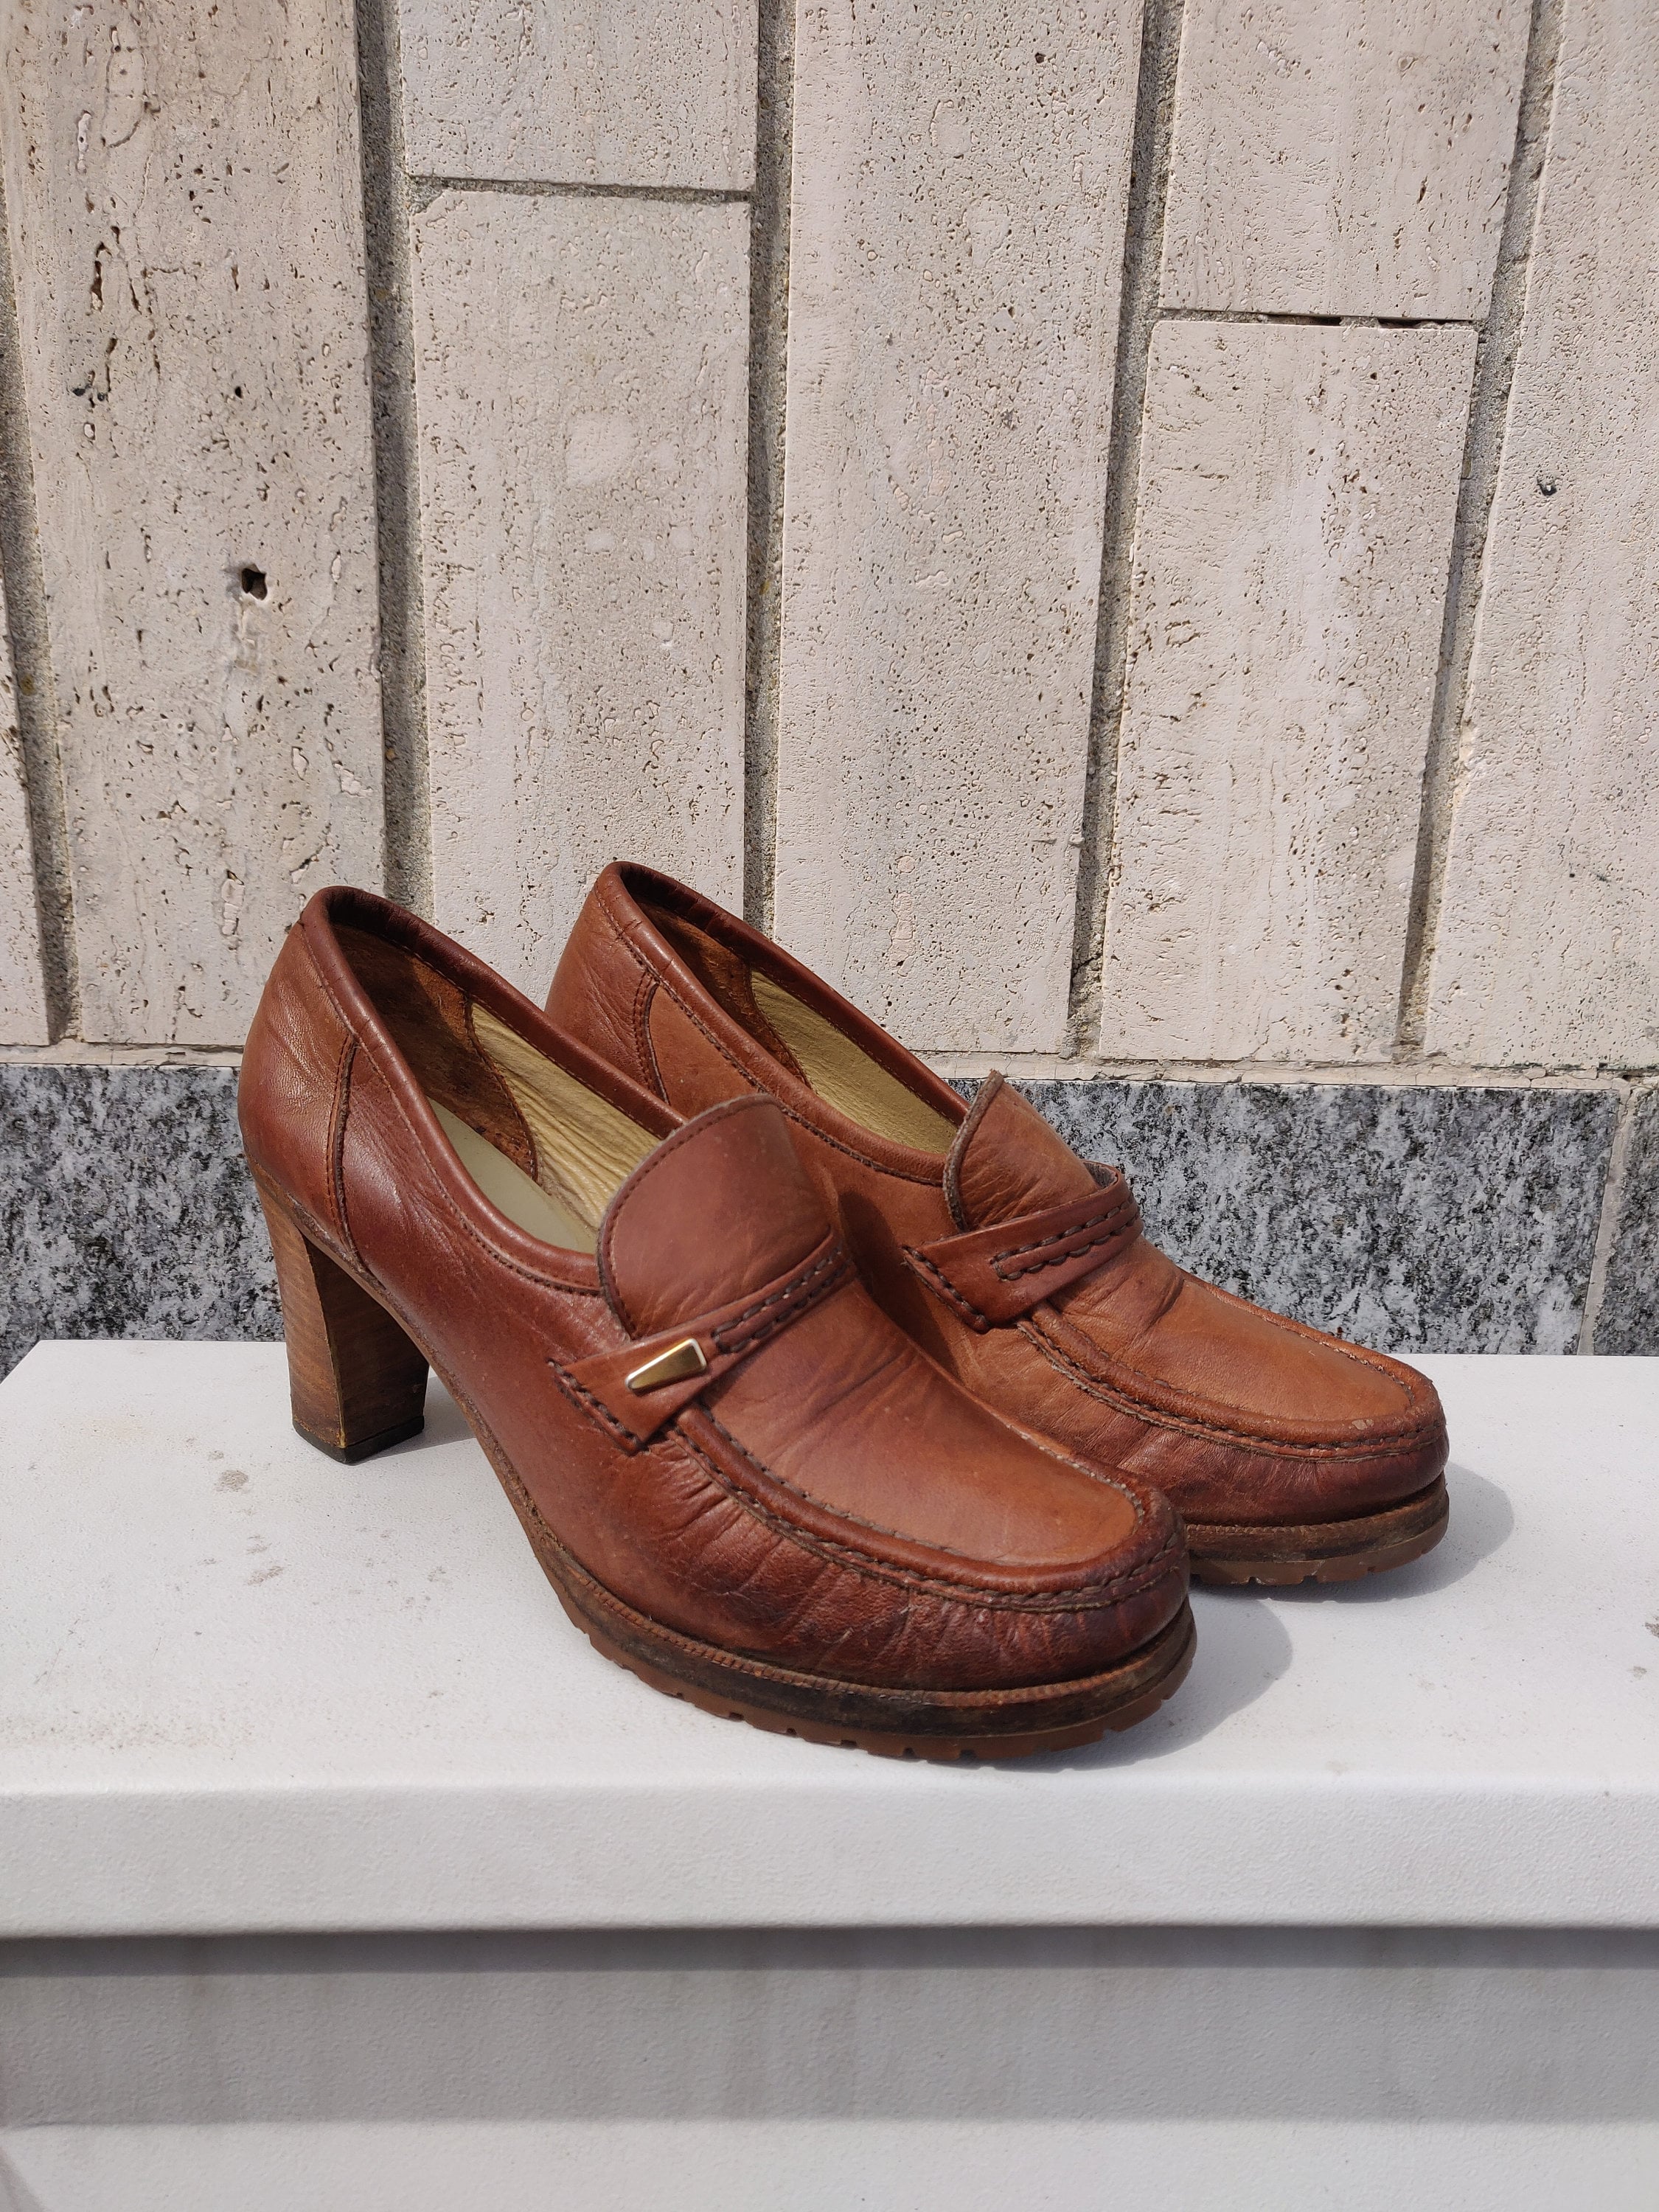 jaren '80 vintage retro stijl comfort en stijl Schoenen damesschoenen Instappers Loafers preppy zwarte naturalizer loafers met gouden gesp trim kantoorkleding klassiek casual chic 